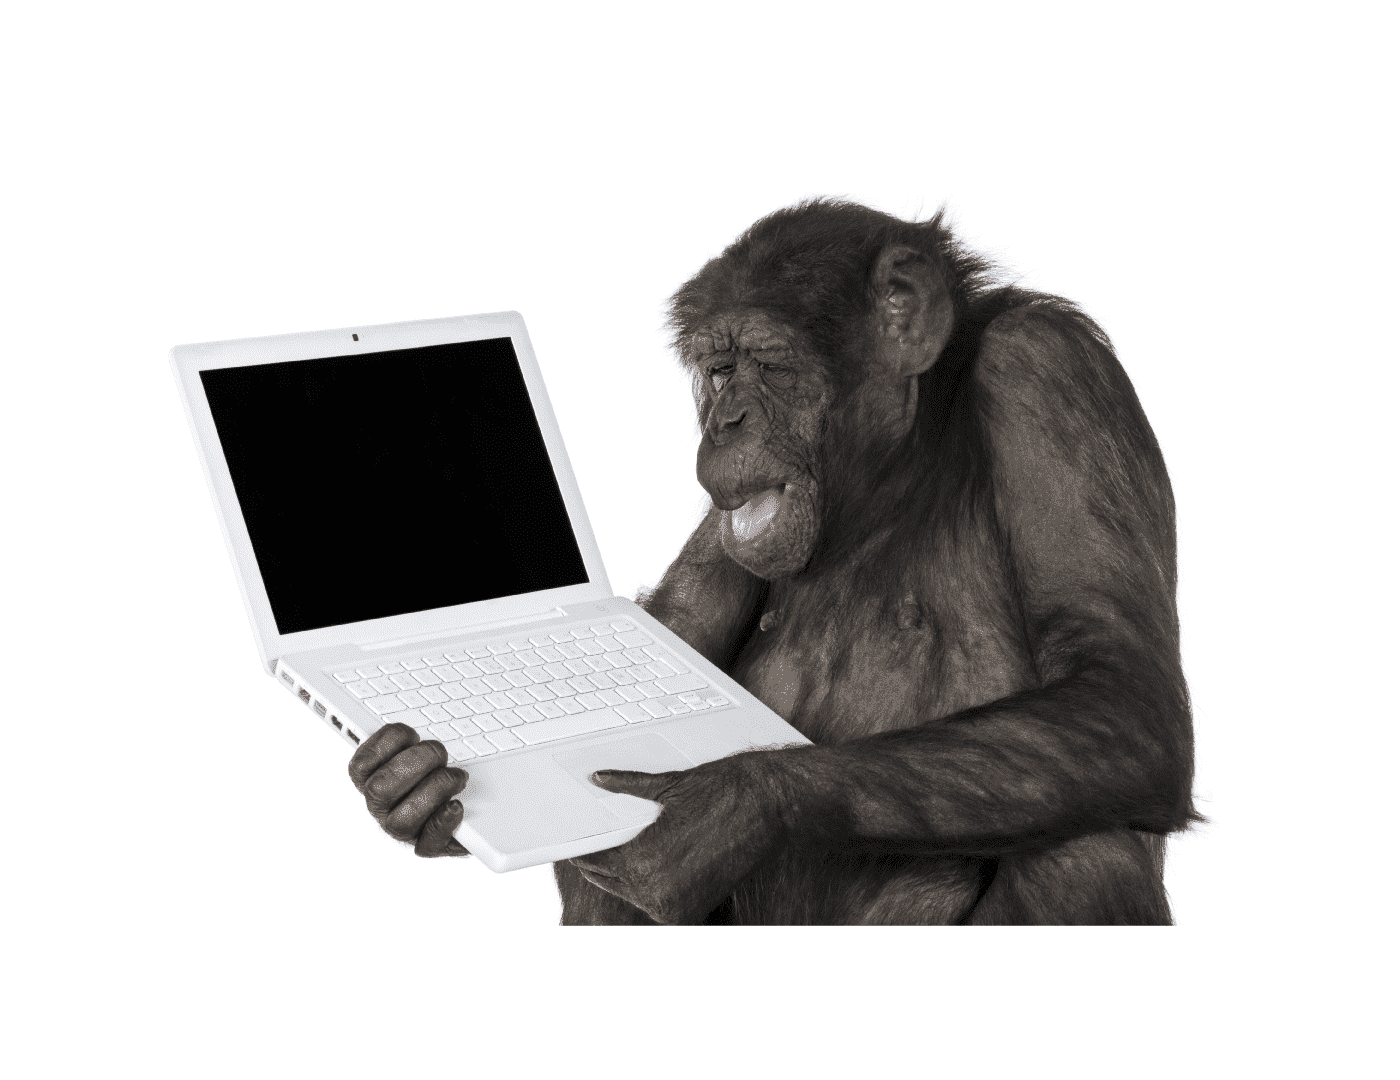 モンキーテスト【monkey testing】とは、別名「アドホックテスト、ゲリラテスト」とも呼ばれます。